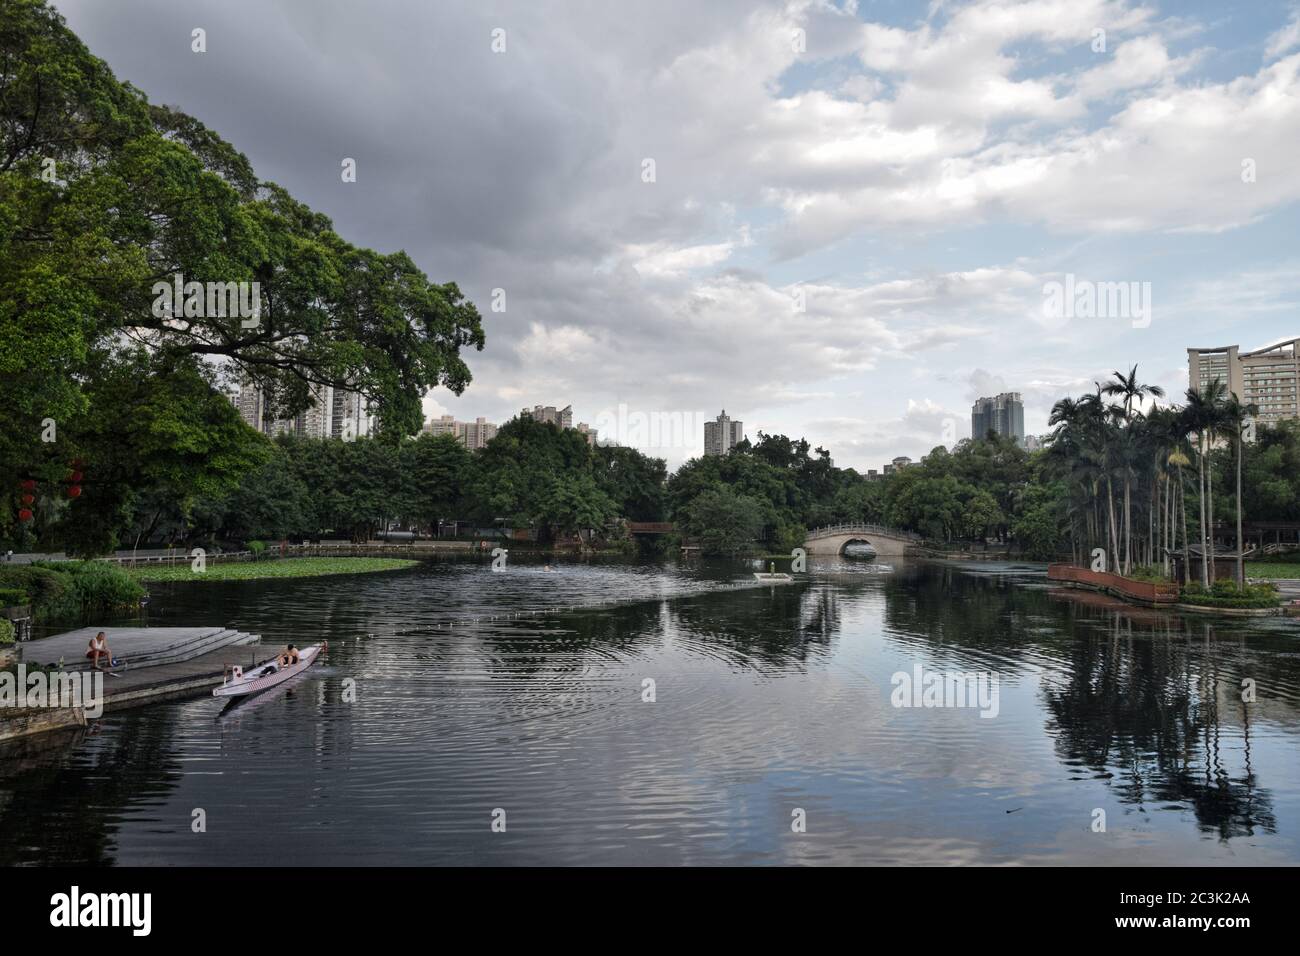 Parco cinese con il lago all'interno, acqua riflesso sulla superficie, edificio moderno in piedi sullo sfondo. Foto Stock